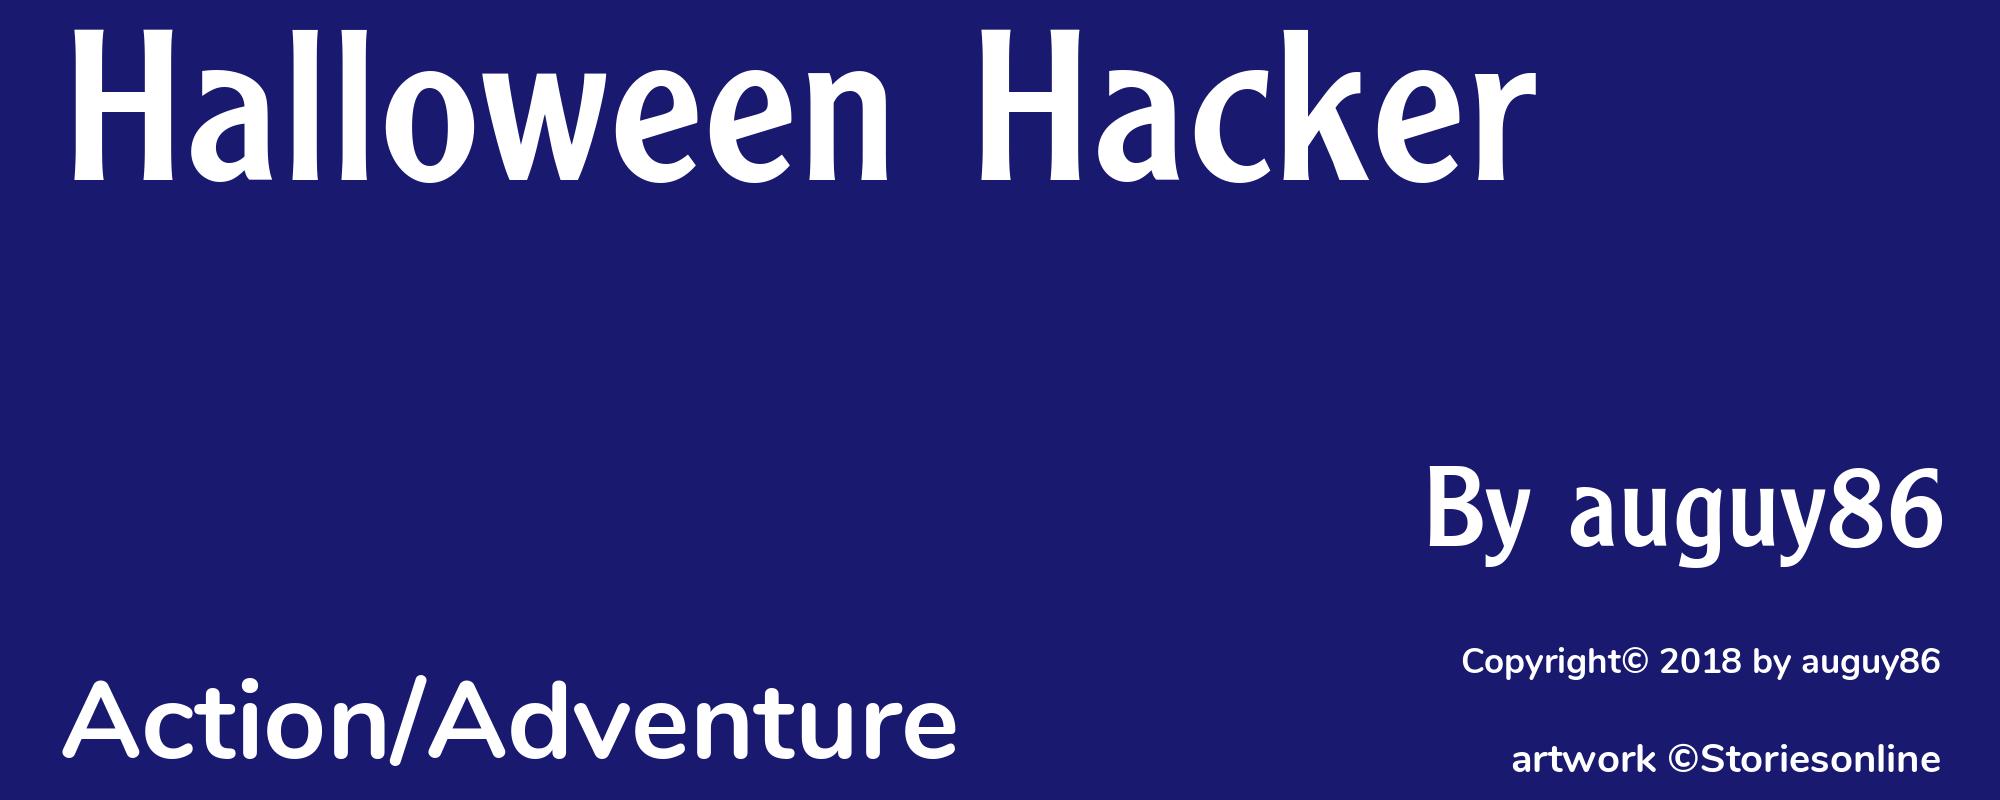 Halloween Hacker - Cover